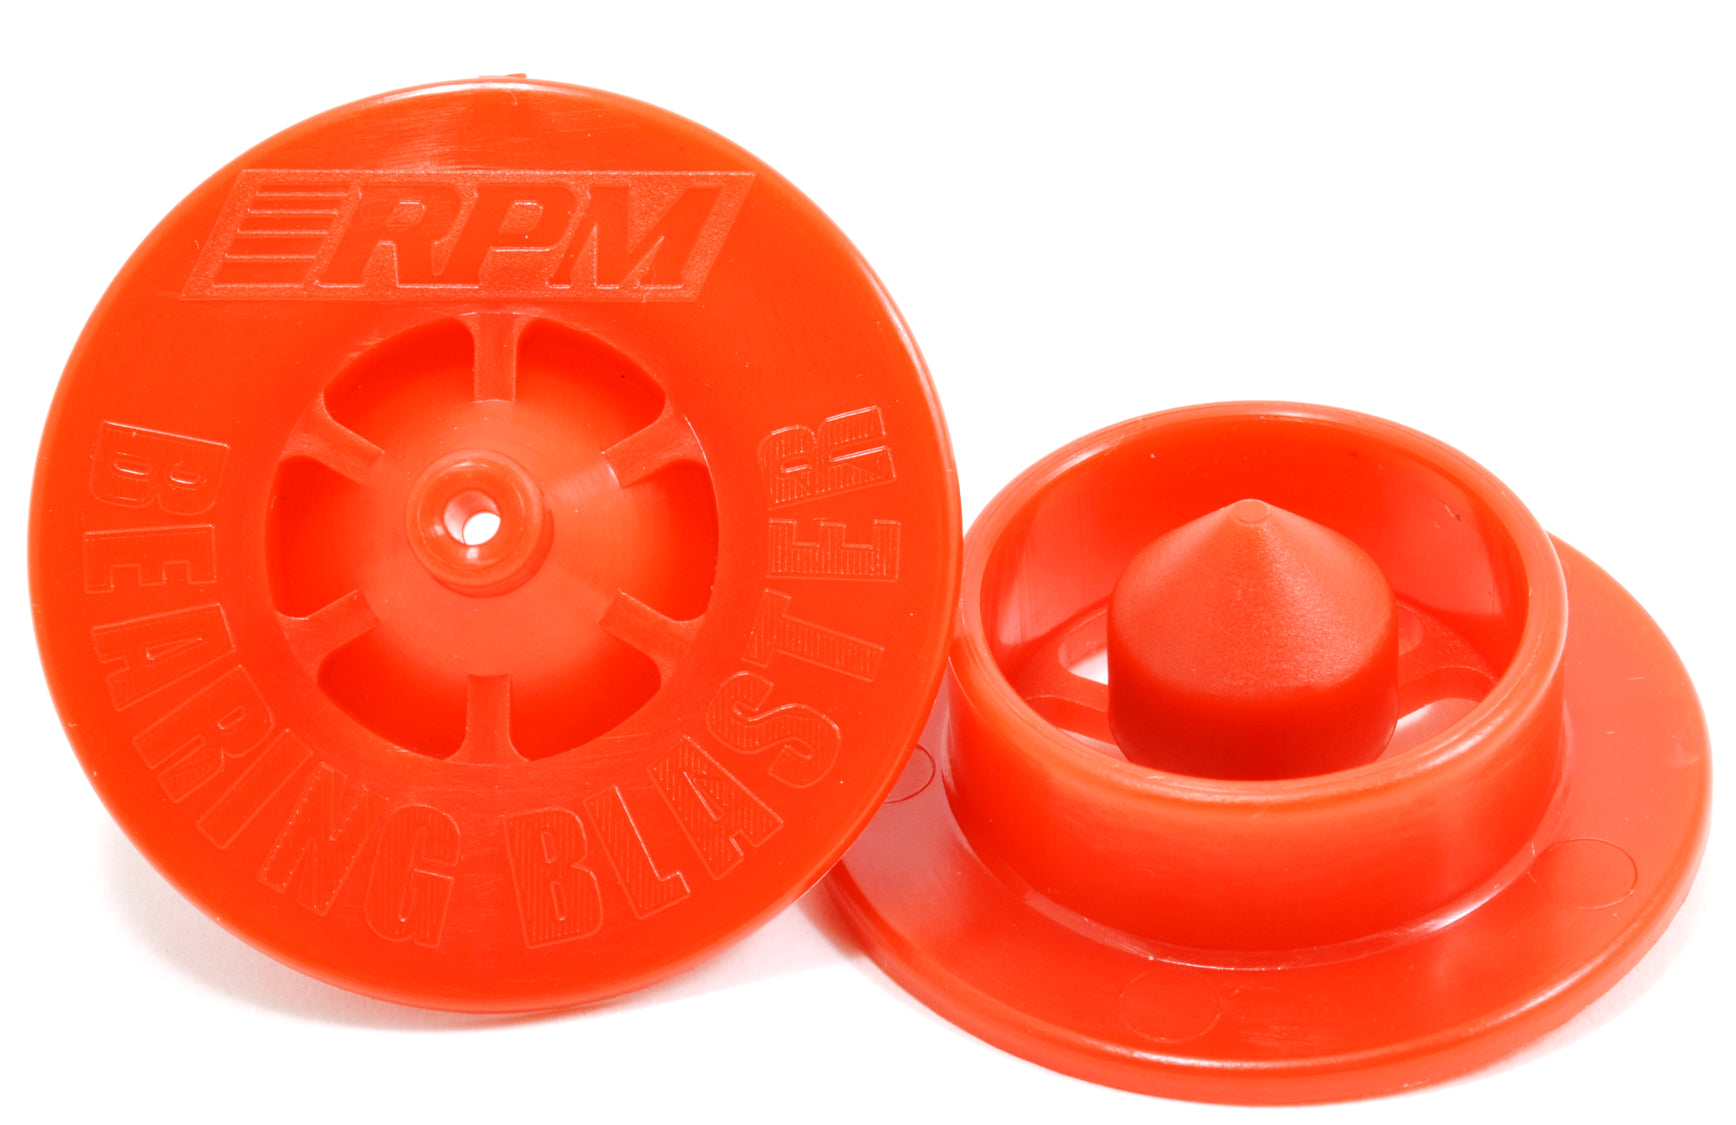 RPM Bearing Blaster Rouge 81170